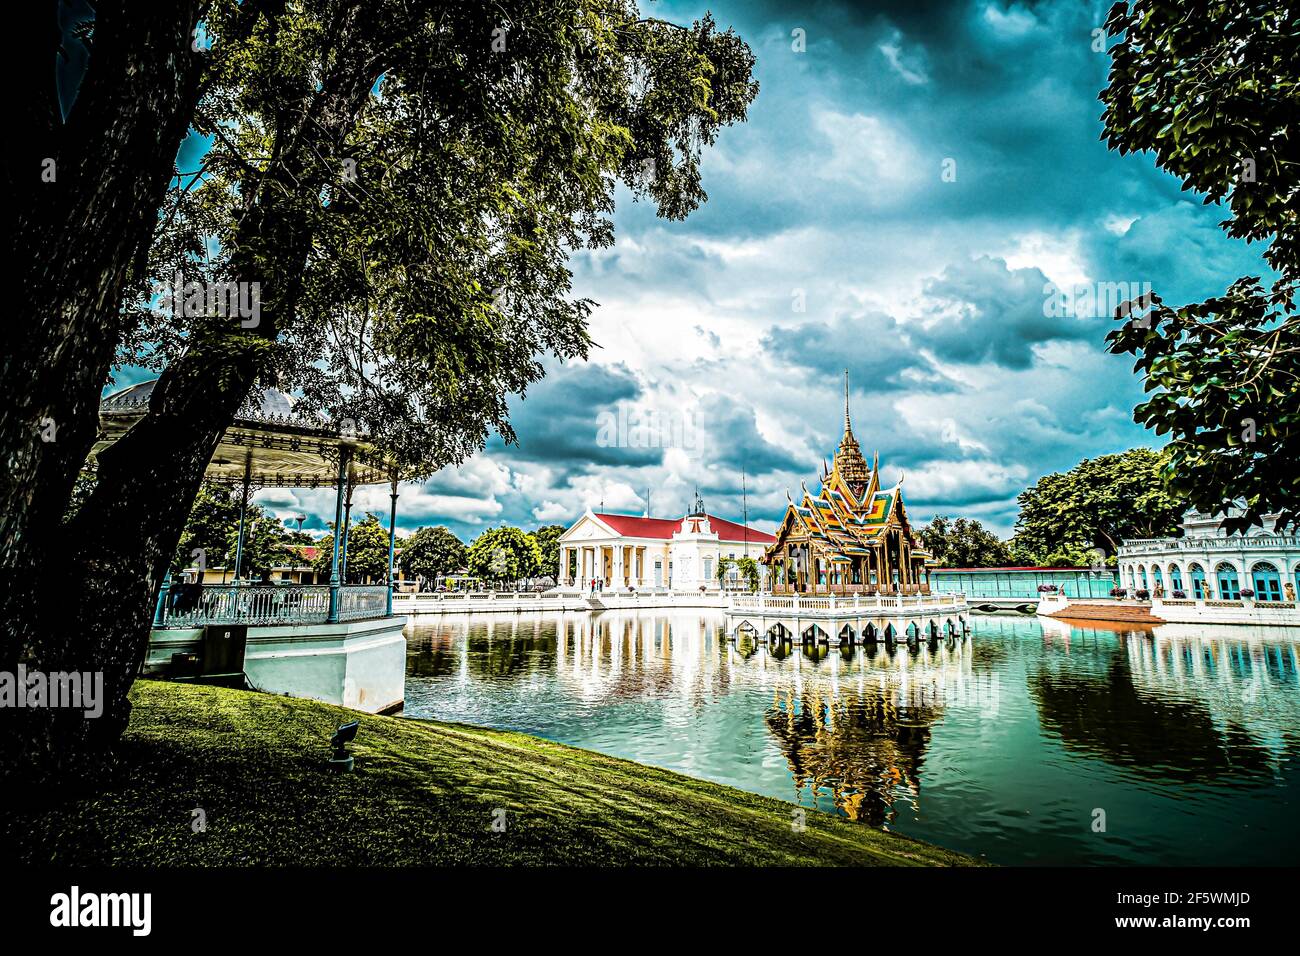 Aisawan-Dhipaya-Asana Pavilion historisches Gebäude Wahrzeichen Reise Architektur in Ayutthaya Thailand. Stockfoto